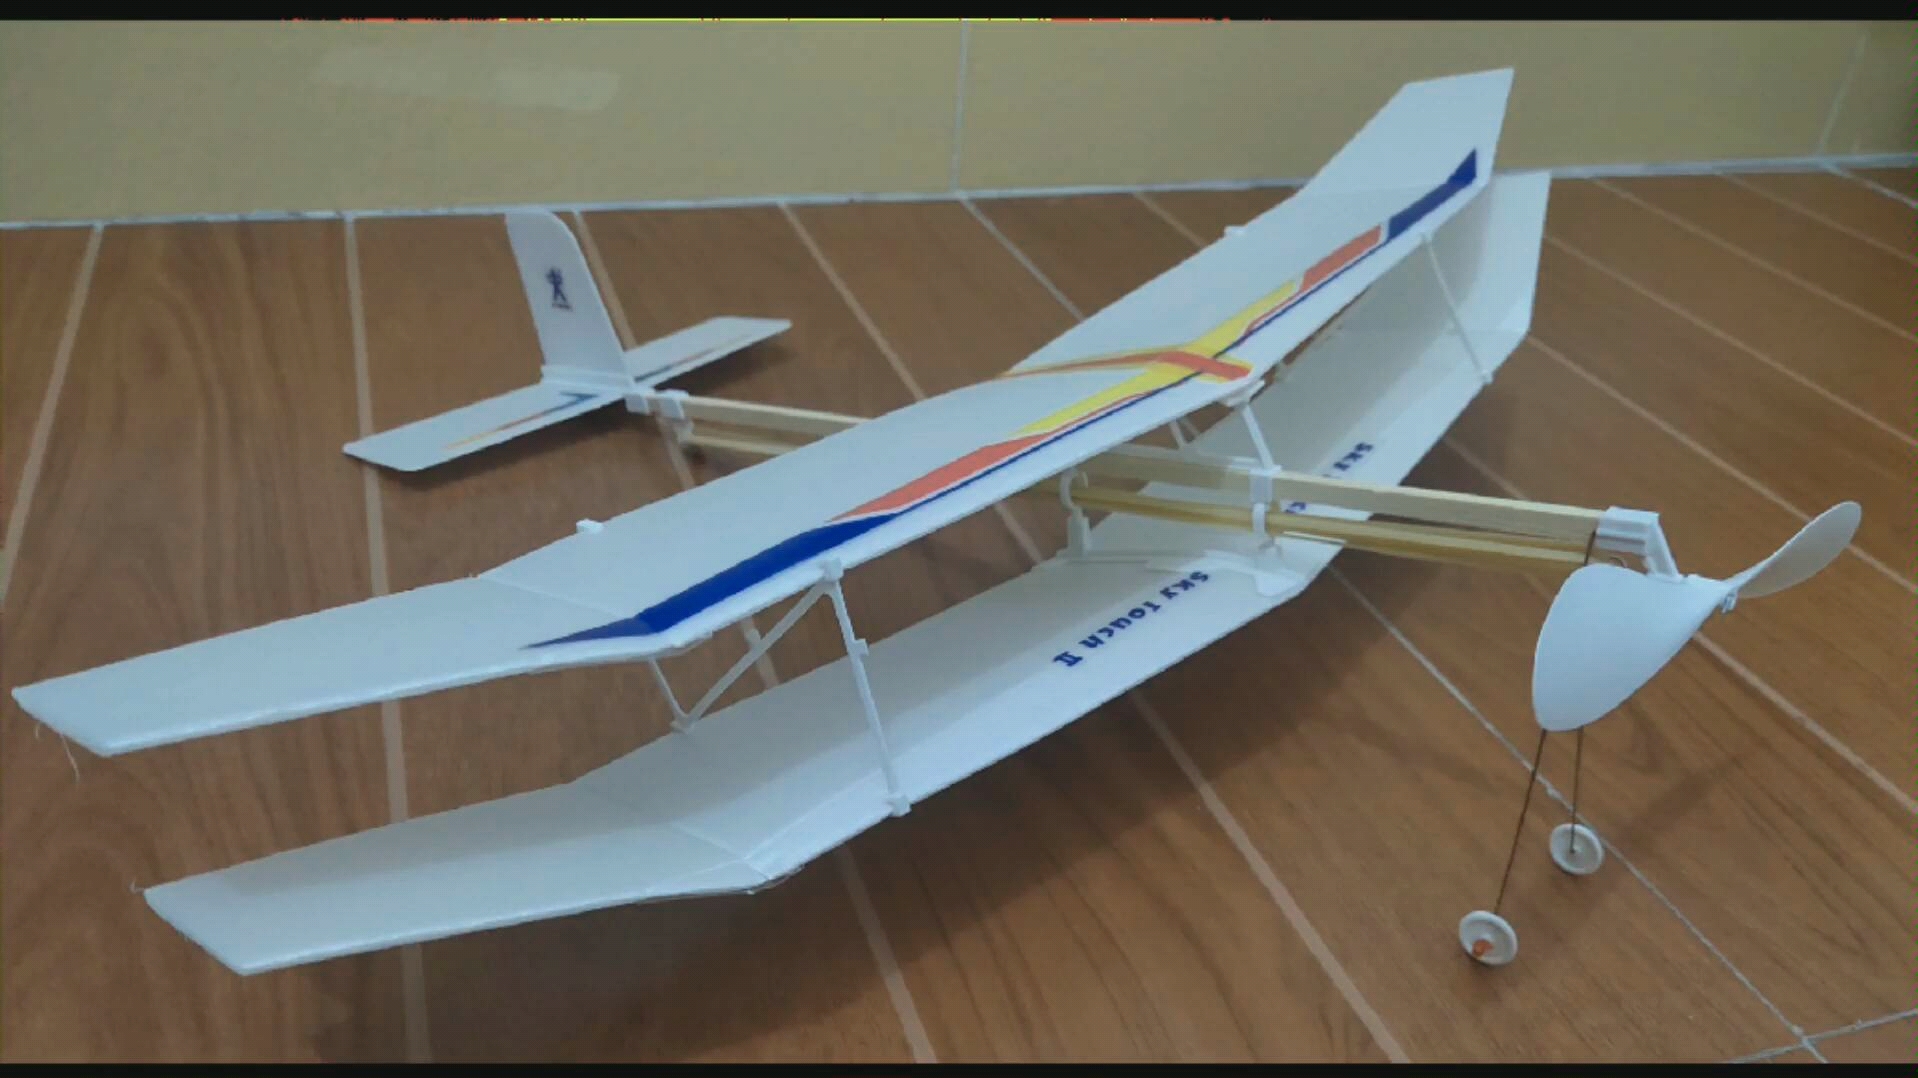 橡筋动力模型飞机安装图片